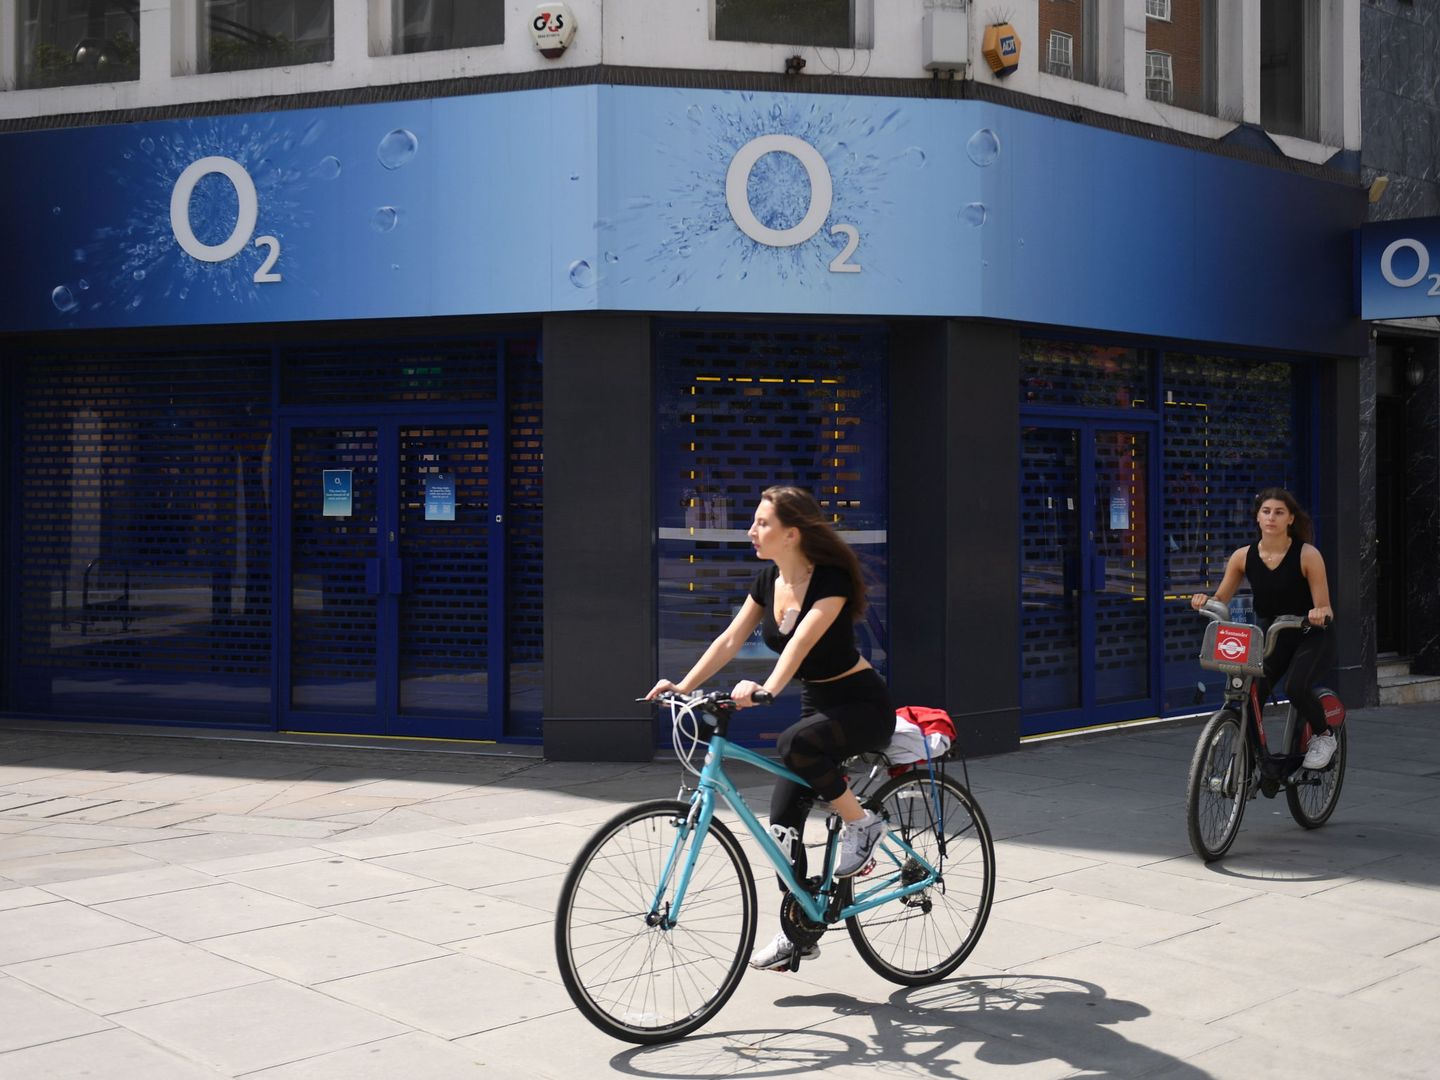 Tienda de O2, la filial británica de Telefónica, en Londres. (Reuters)